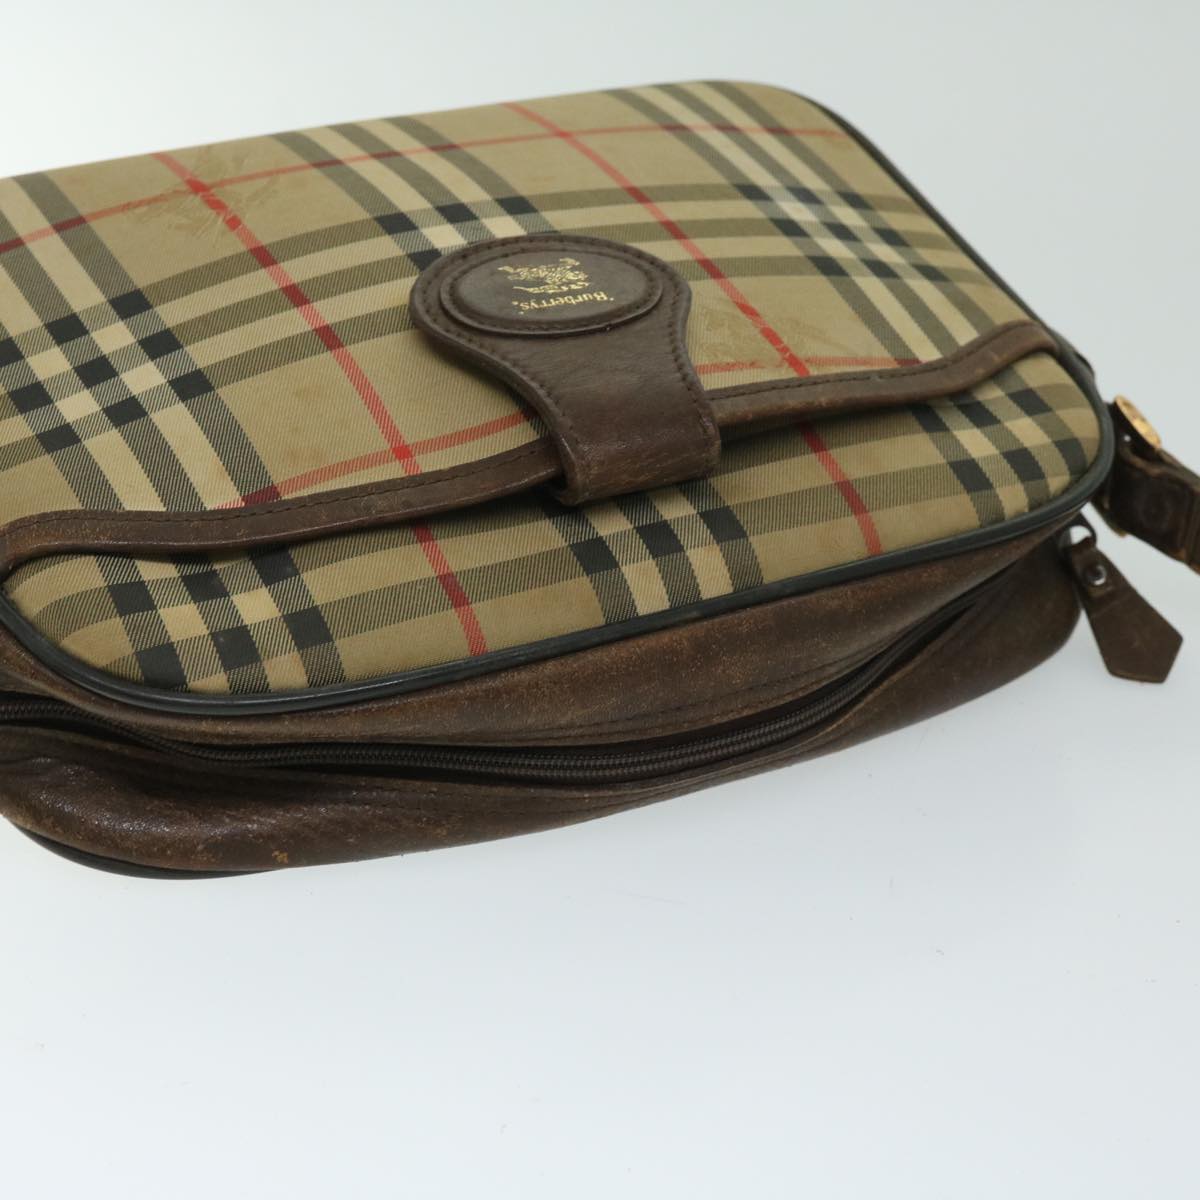 Burberrys Nova Check Shoulder Bag Canvas Beige Auth 68023